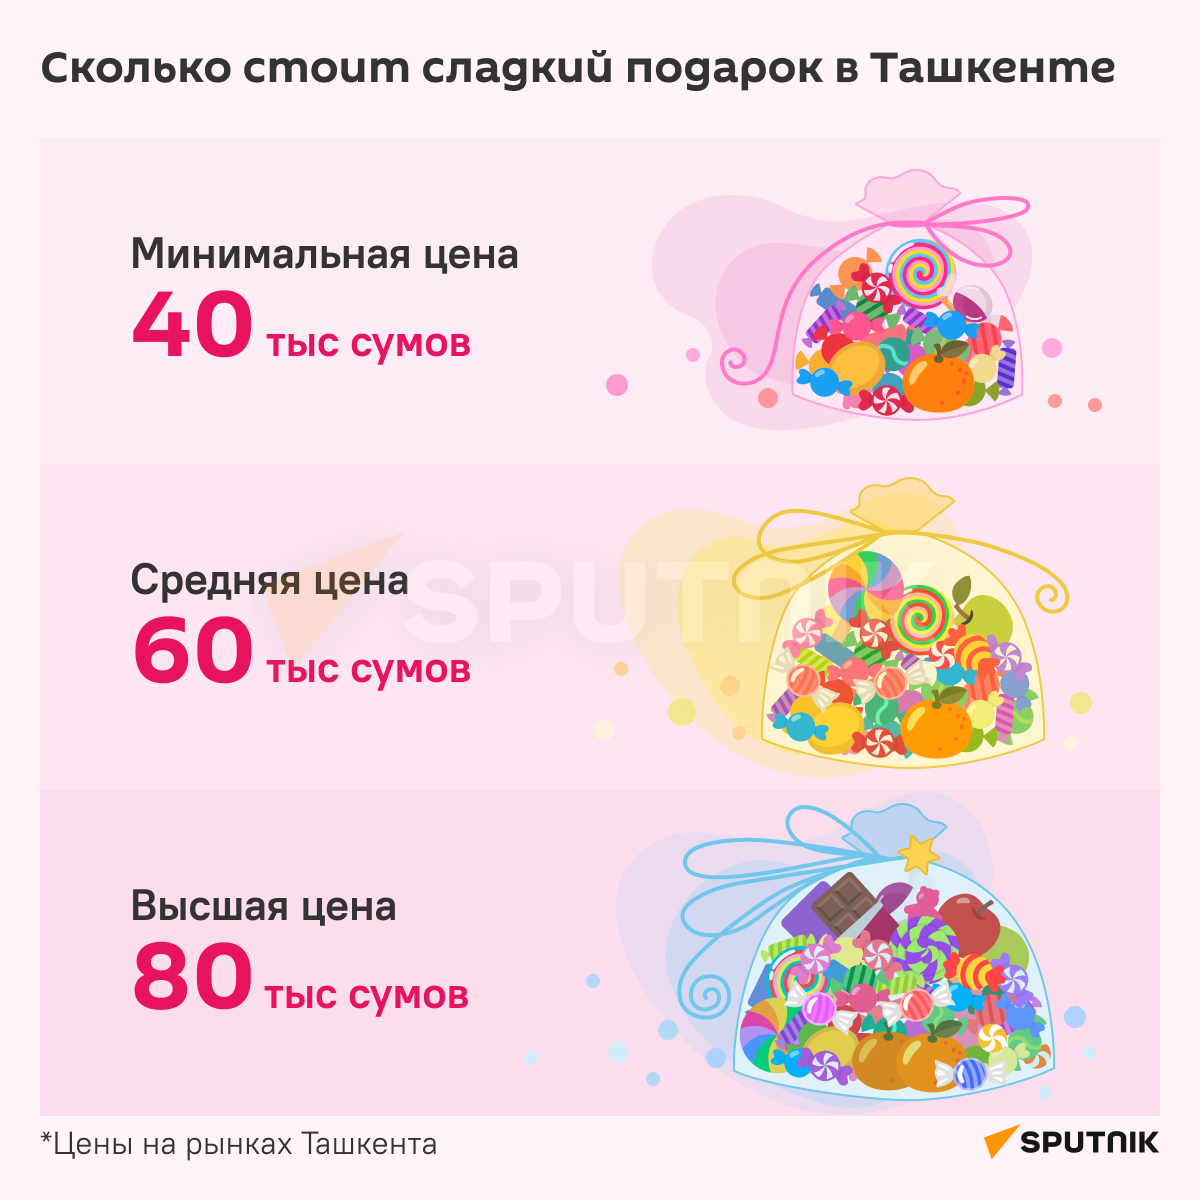 Сколько стоит сладкий подарок в Ташкенте инфографика. - Sputnik Узбекистан